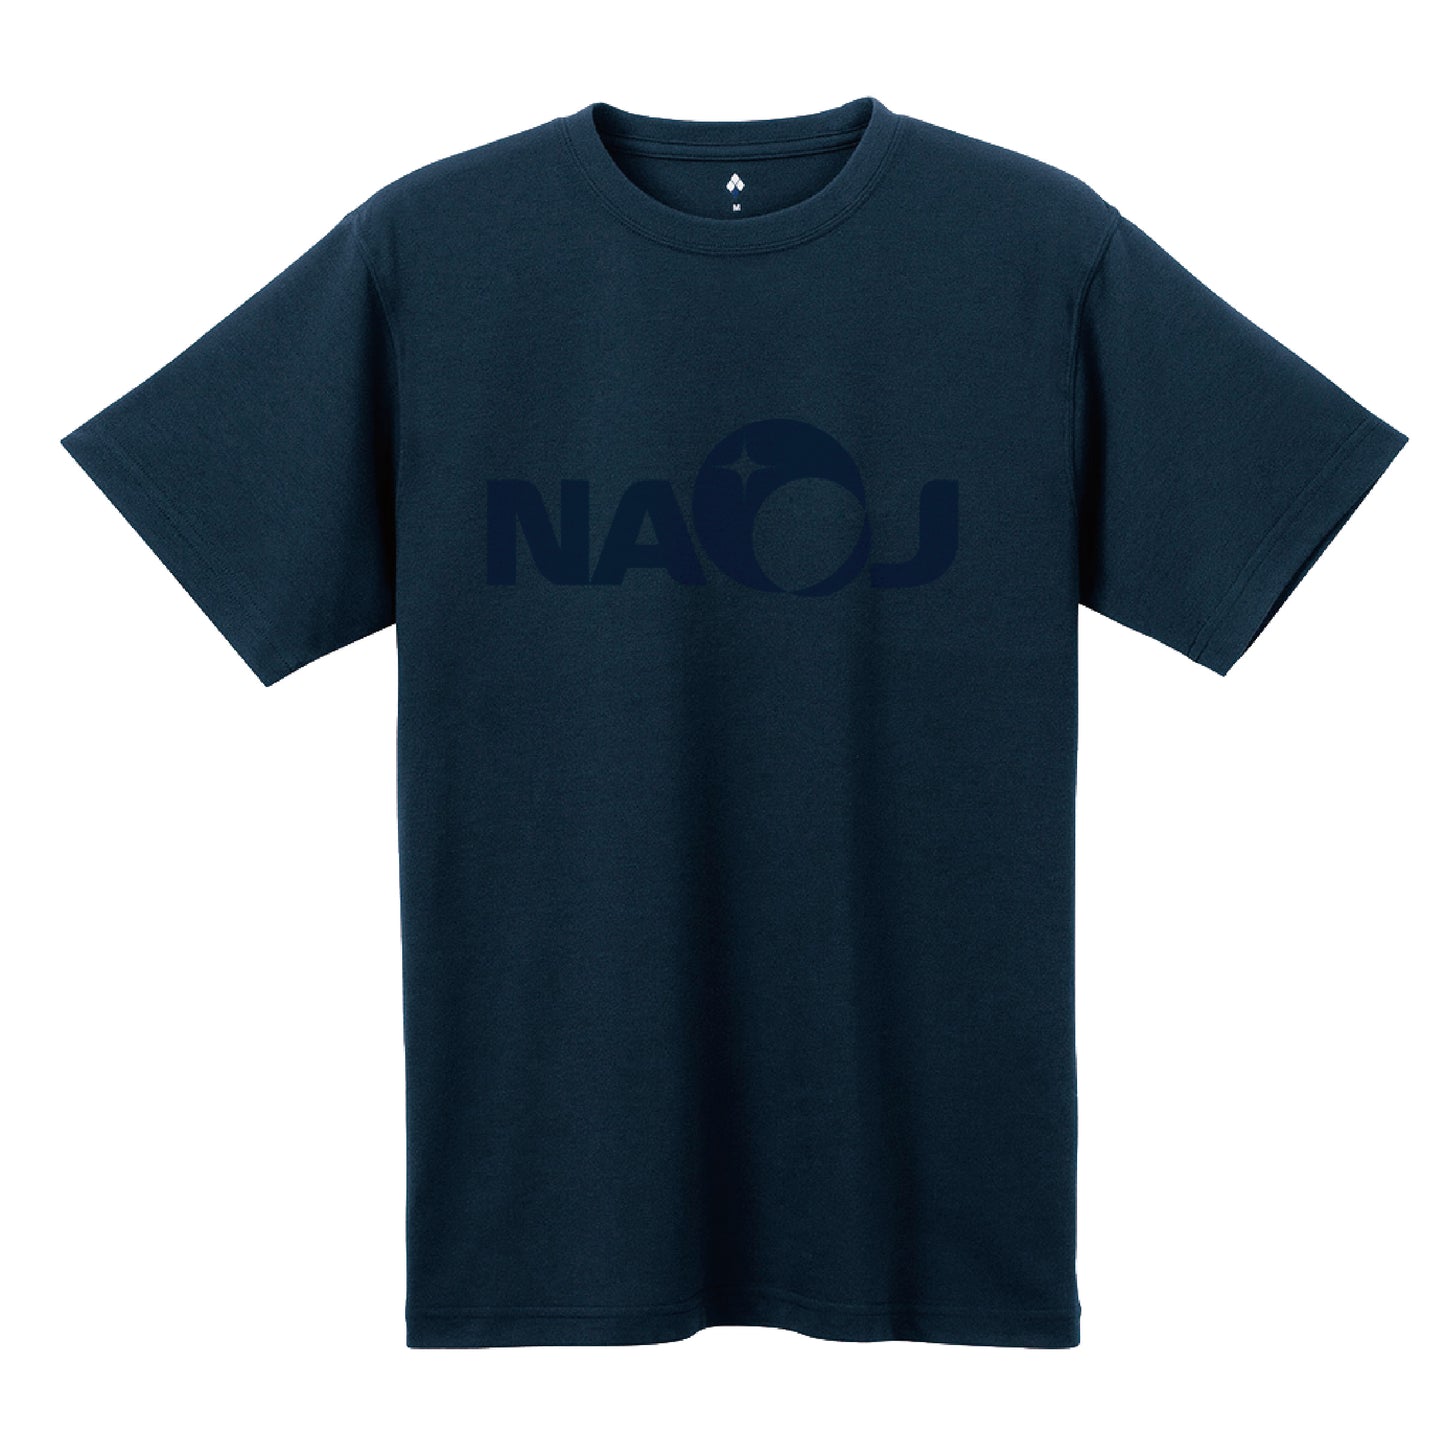 国立天文台 NAOJ ロゴマーク WIC. Tシャツ ネイビー x ネイビー M 00